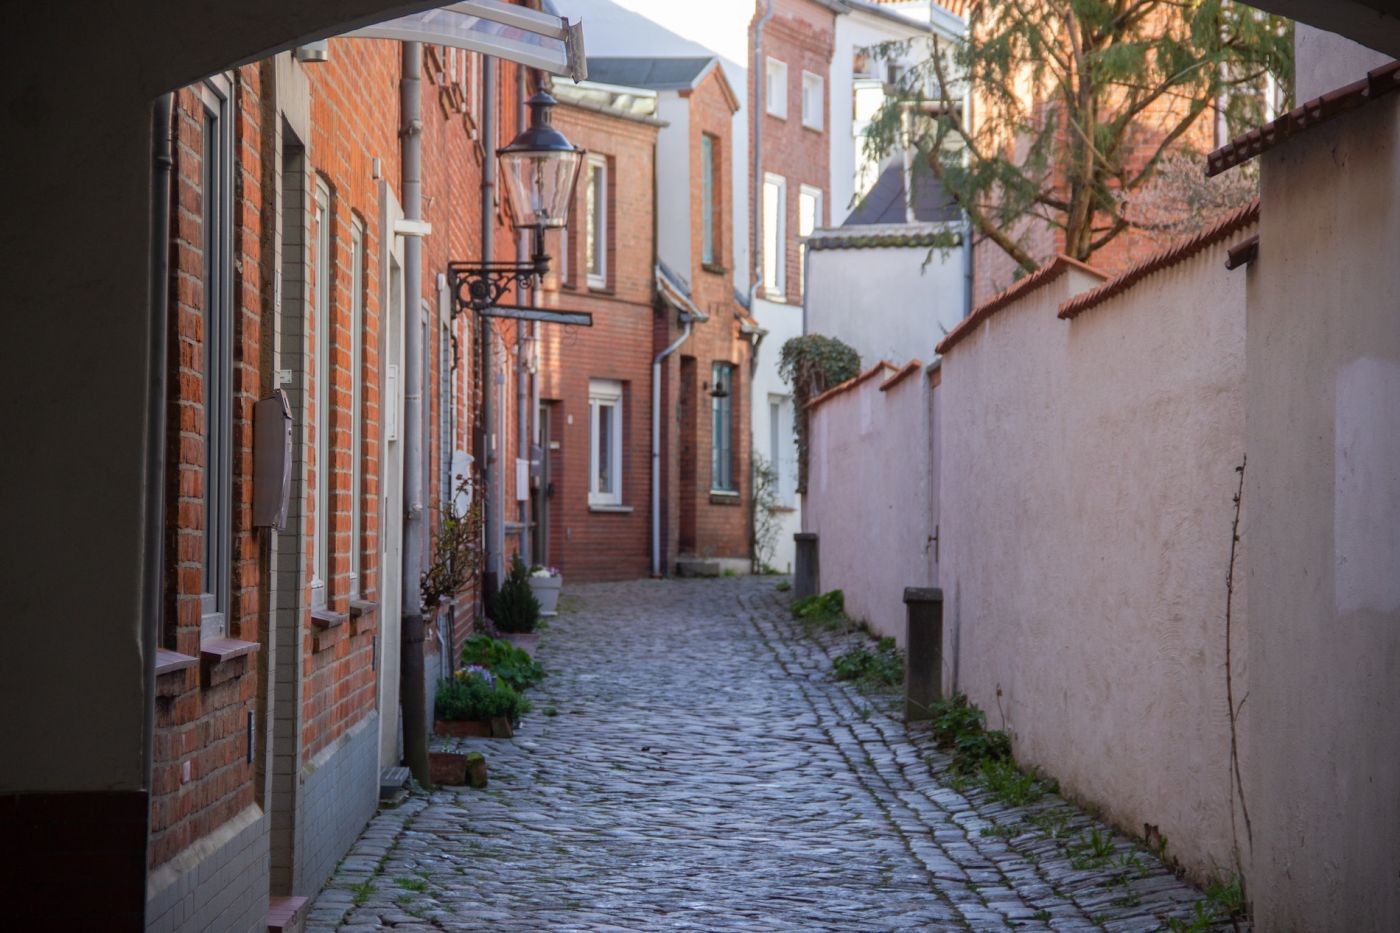 Gänge und enge Straßen in Lübeck